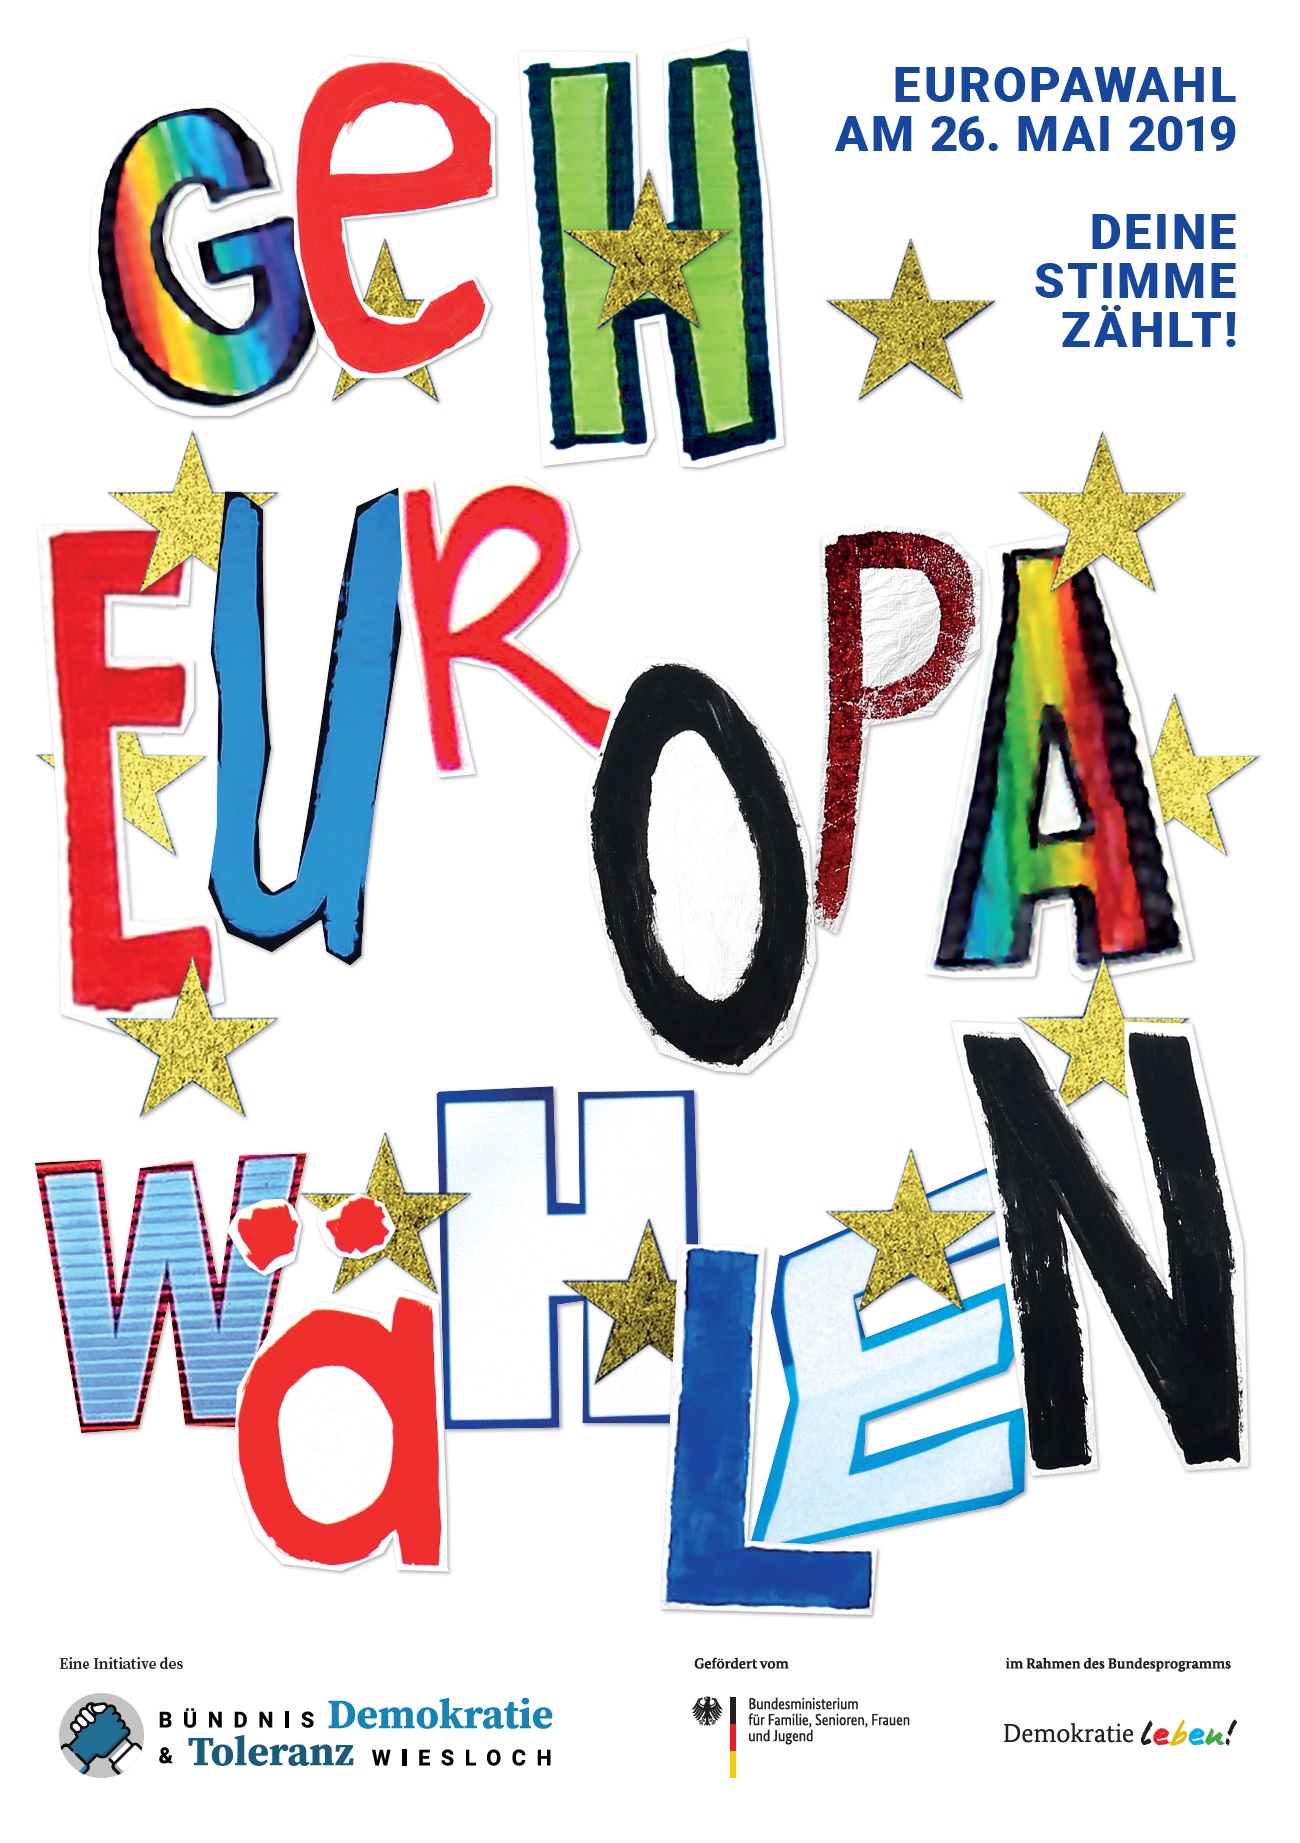 Das Bild zeigt ein Plakat aus dem Projekt "Geh Europa wählen 2019